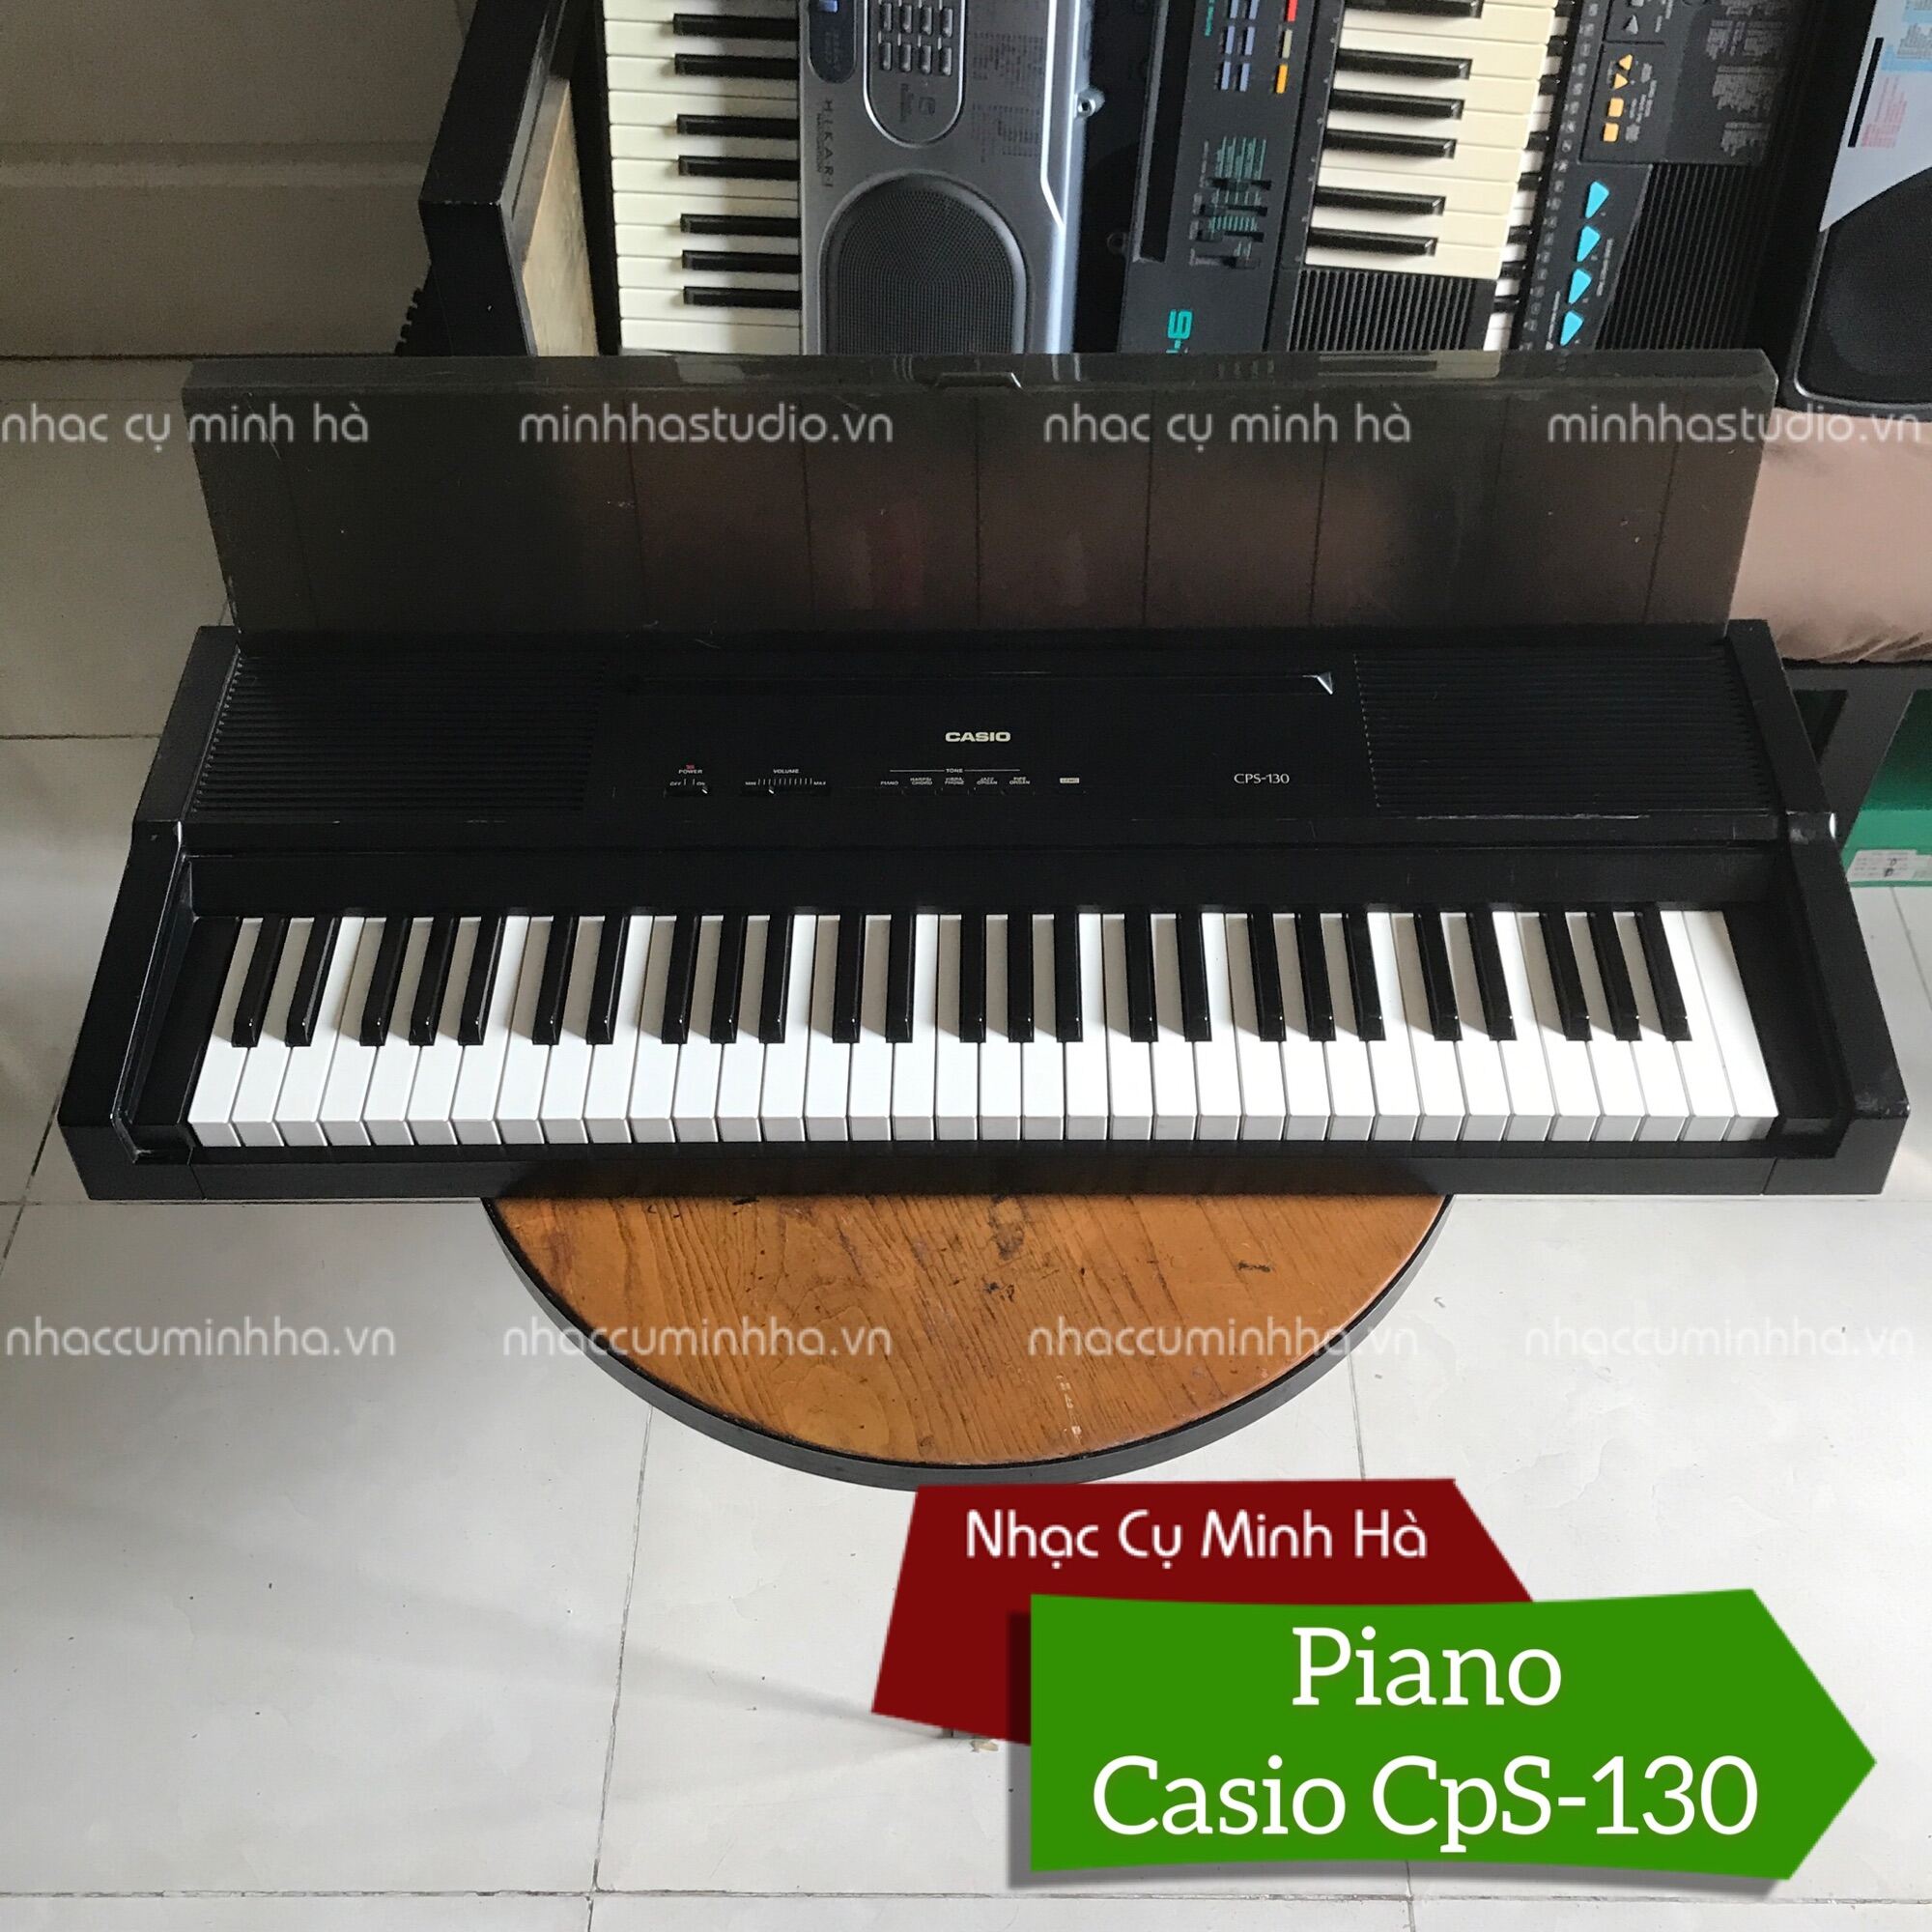 Đàn Piano Casio CPS-130 chính hãng, 61 phím đã qua sử dụng, âm thanh tuyệt hay, chạy hoàn hảo